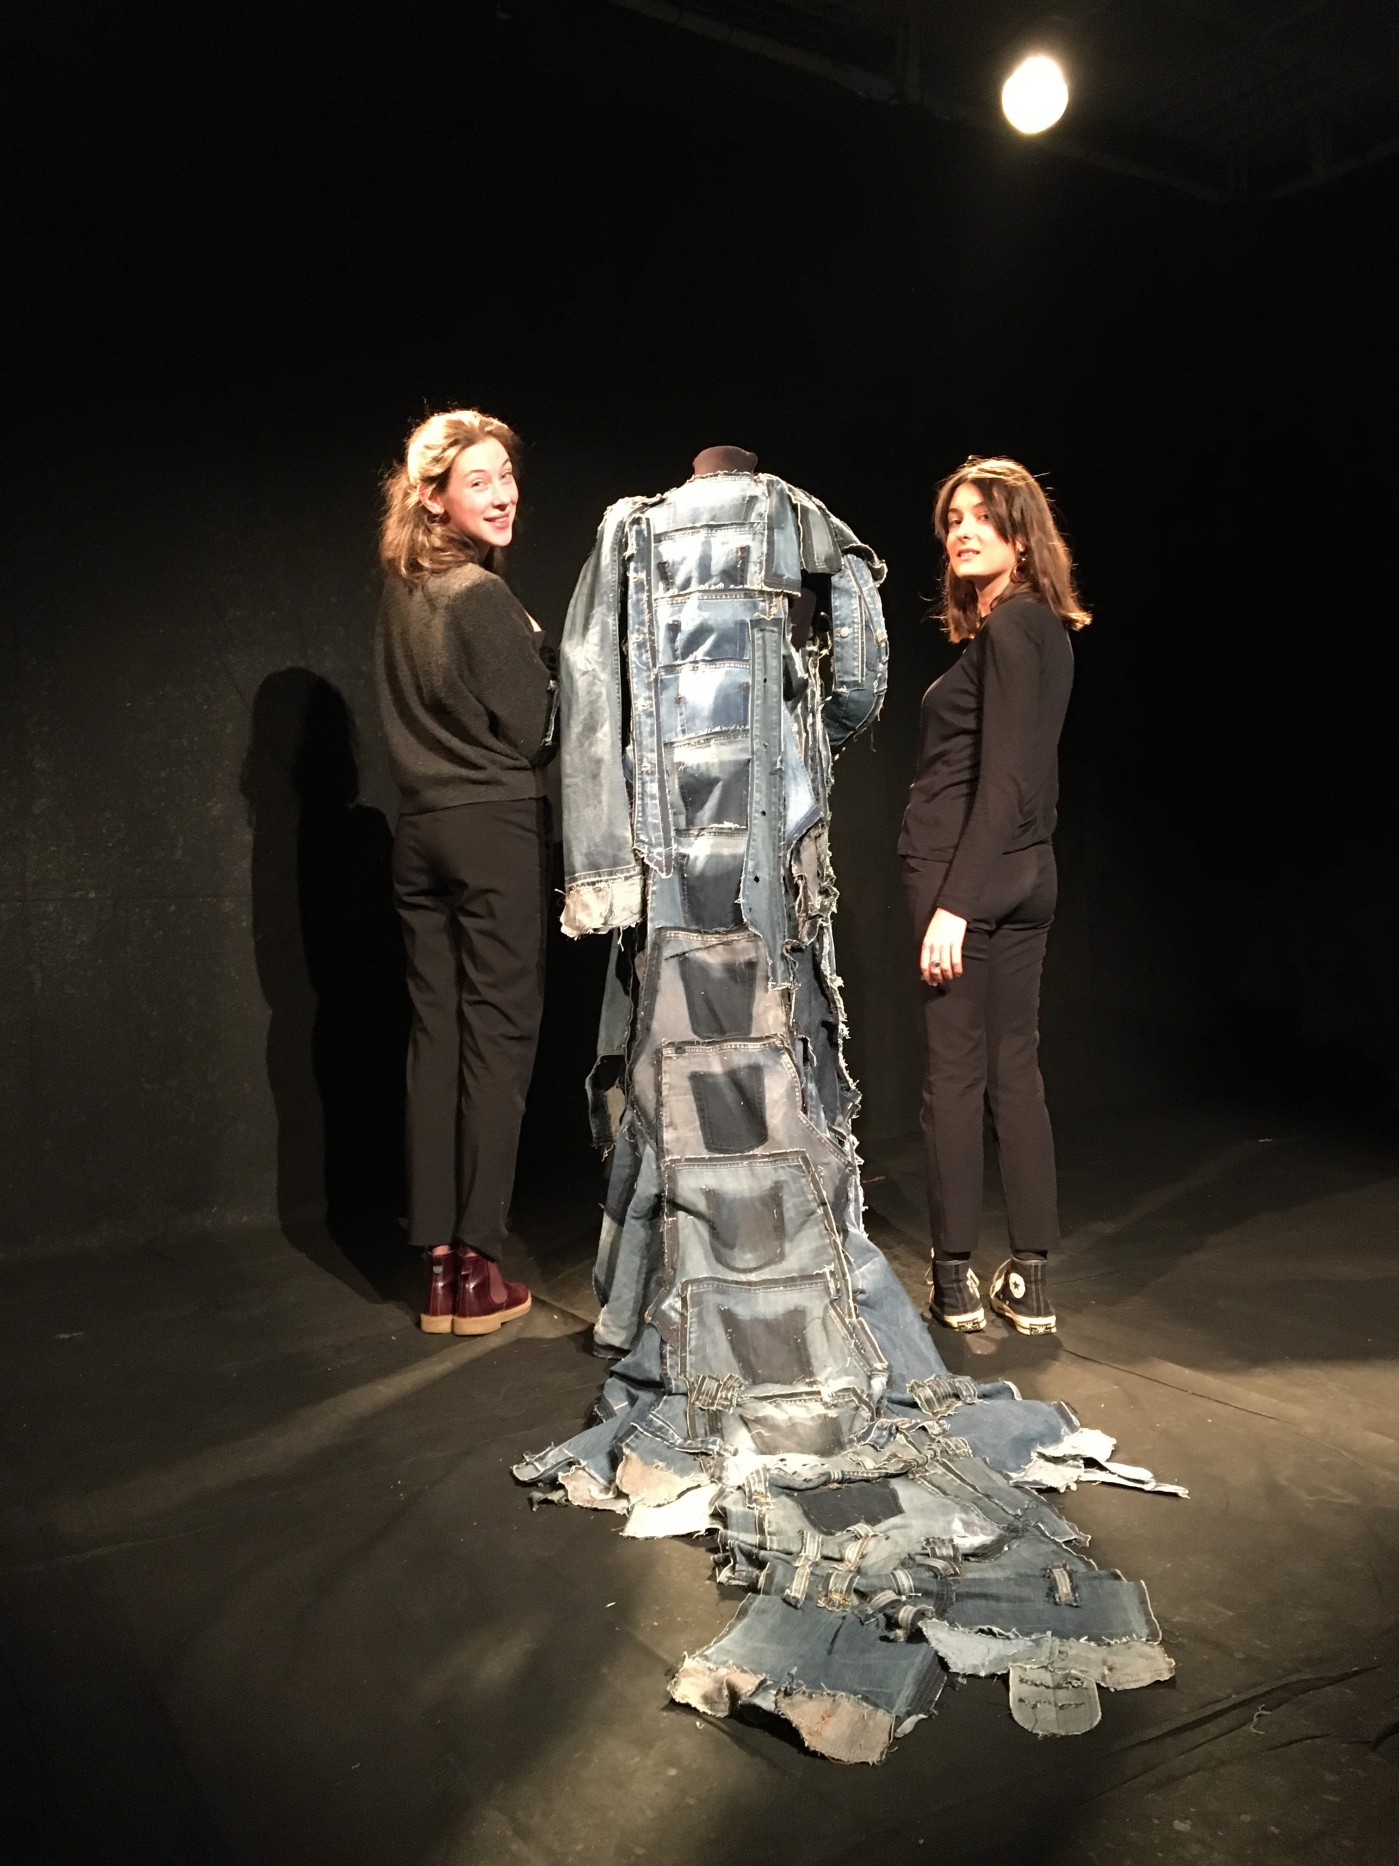 Projet de manteau de voyage autour du sujet de Peer Gynt (Ibsen) 
Elisabeth Decaix et Suzanne Gaudot